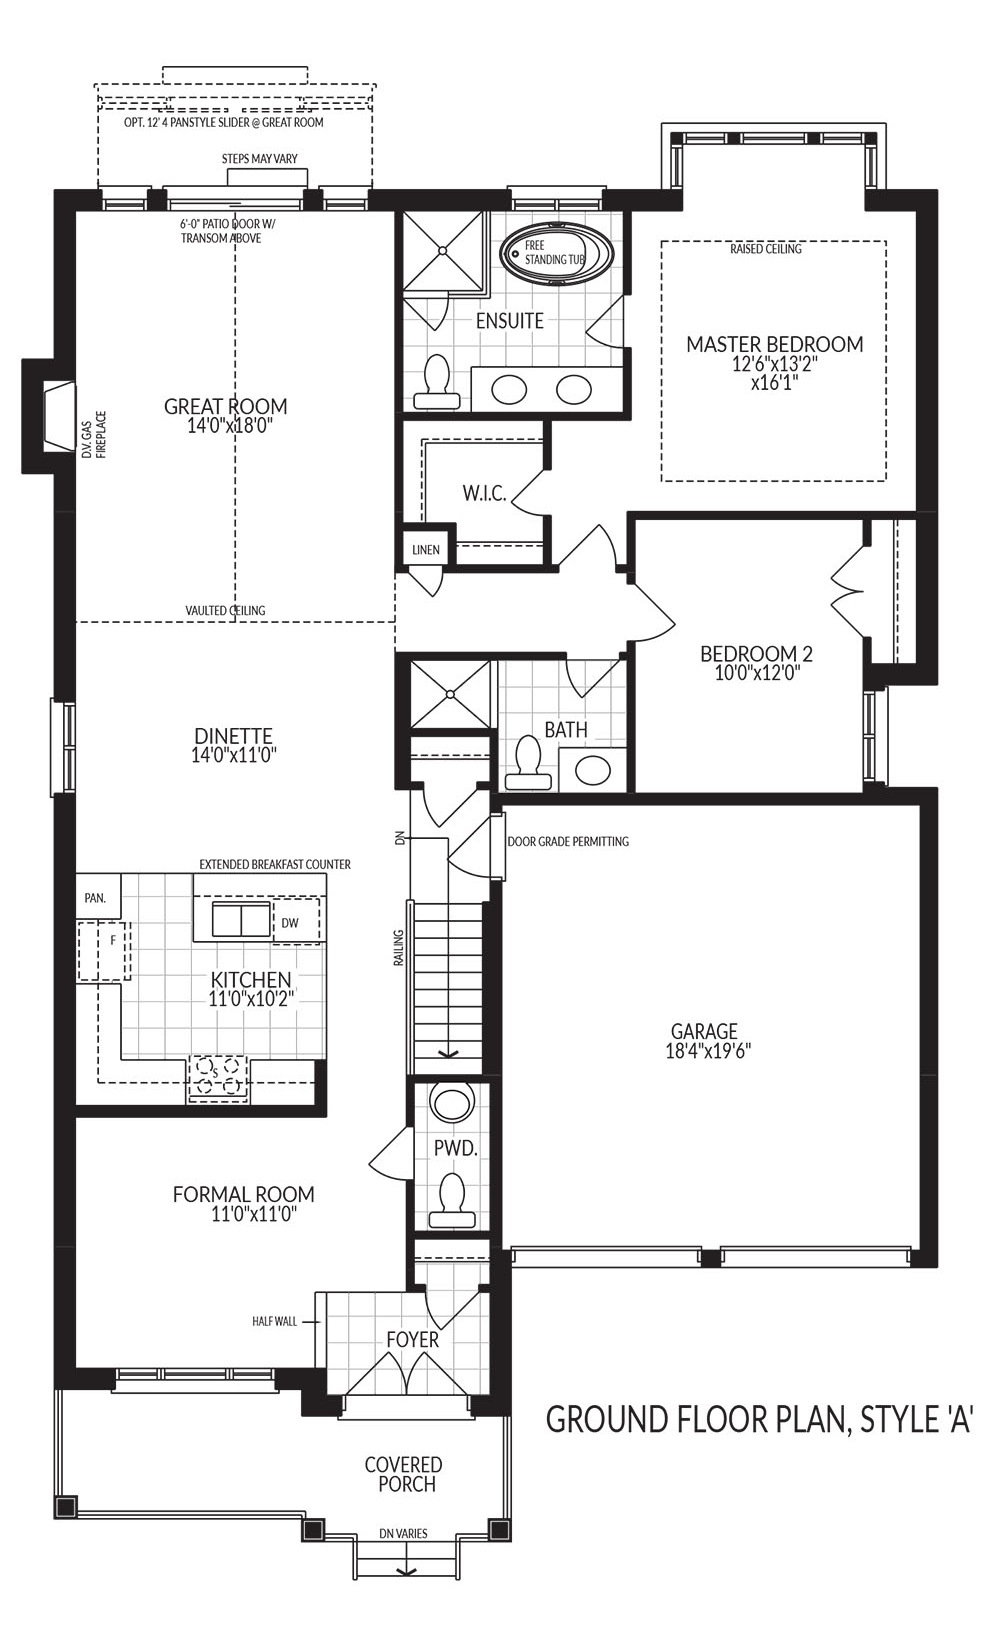 Arthur ground floor plan style A